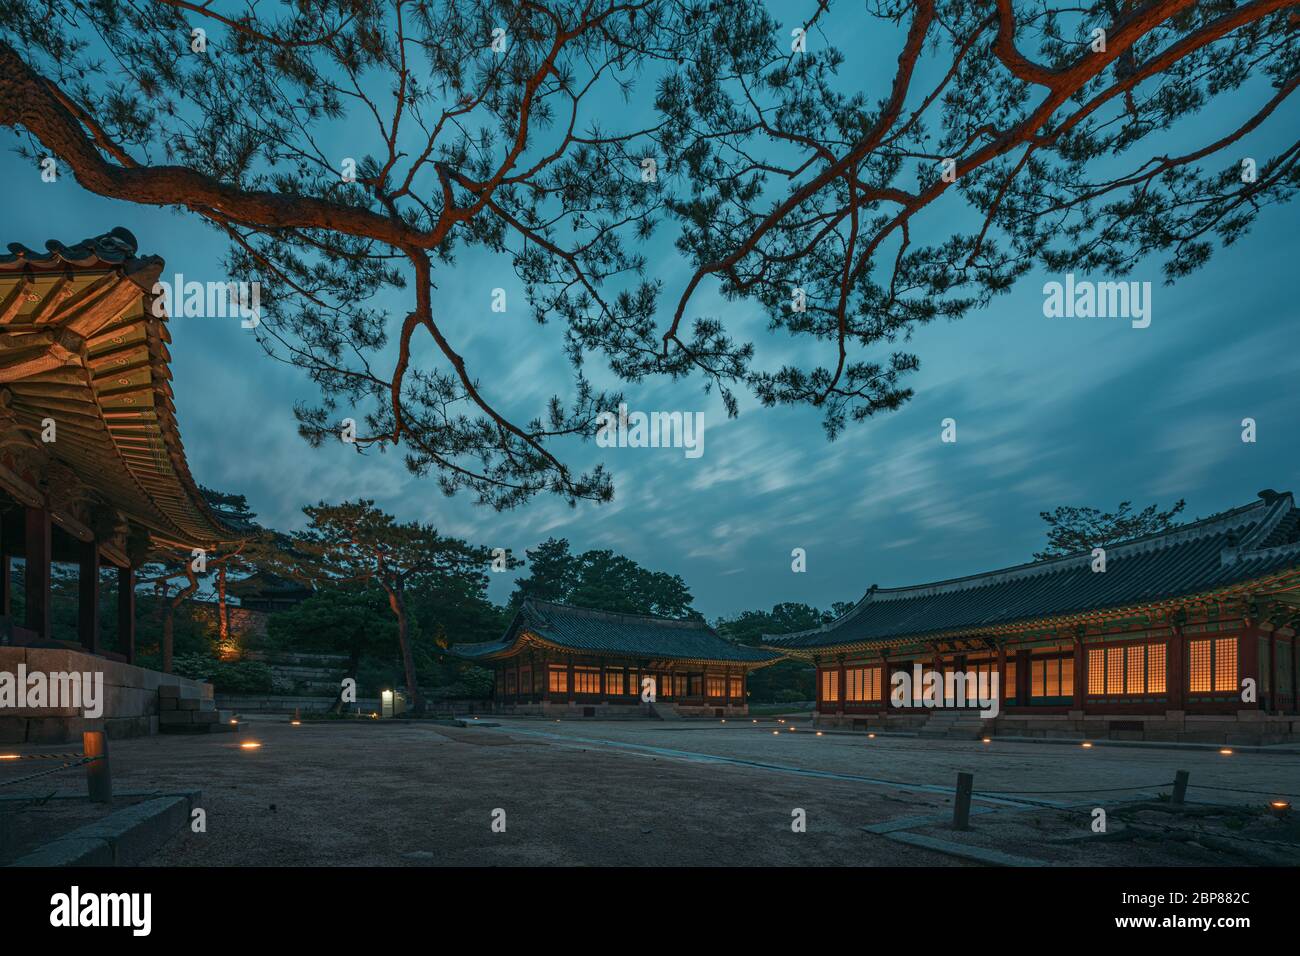 Seúl, Corea del Sur - 17 de mayo de 2020: Changgyeonggung es uno de los únicos palacios en Corea que ofrecen horarios regulares de noche. Iluminado maravillosamente por la noche, th Foto de stock